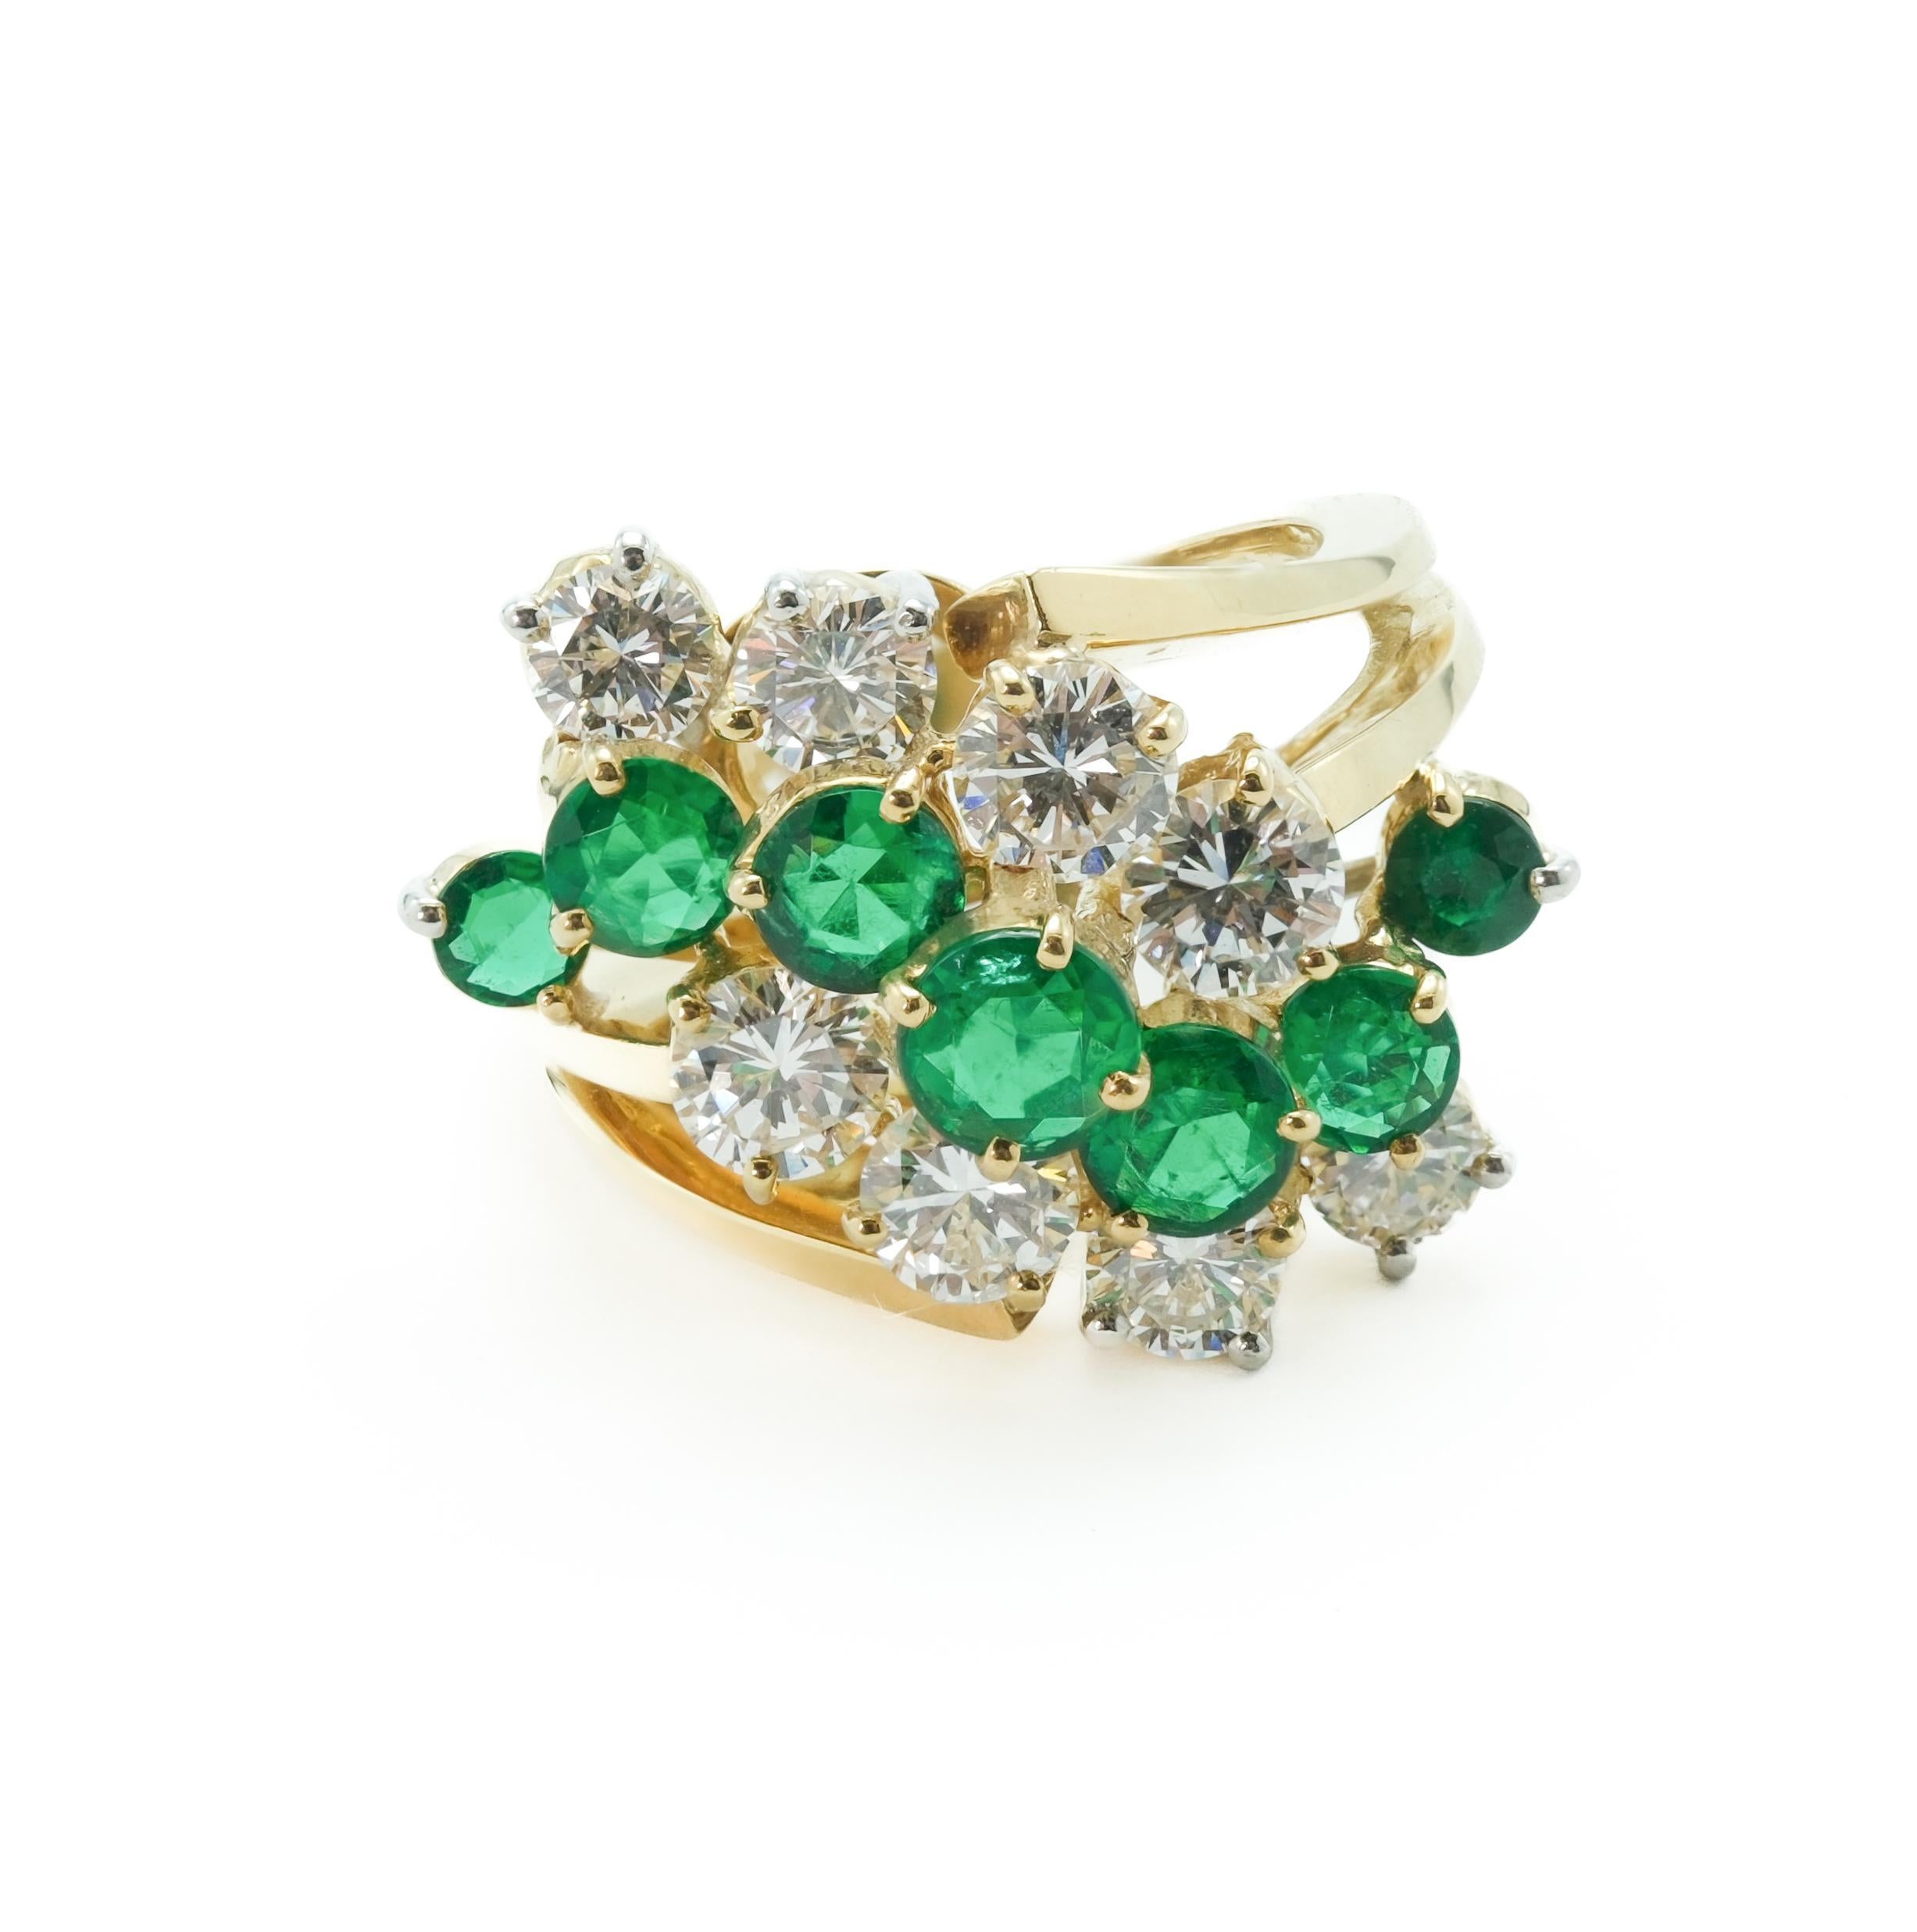 Modernistischer Ring von Kurt Wayne mit 1,7 ctw Smaragden und 1,9 ctw Diamanten. Dieser exquisite Ring ist so gestaltet, dass die Smaragde im Mittelpunkt der Aufmerksamkeit stehen. Der Kontrast zwischen den reinen weißen Diamanten und den waldgrünen